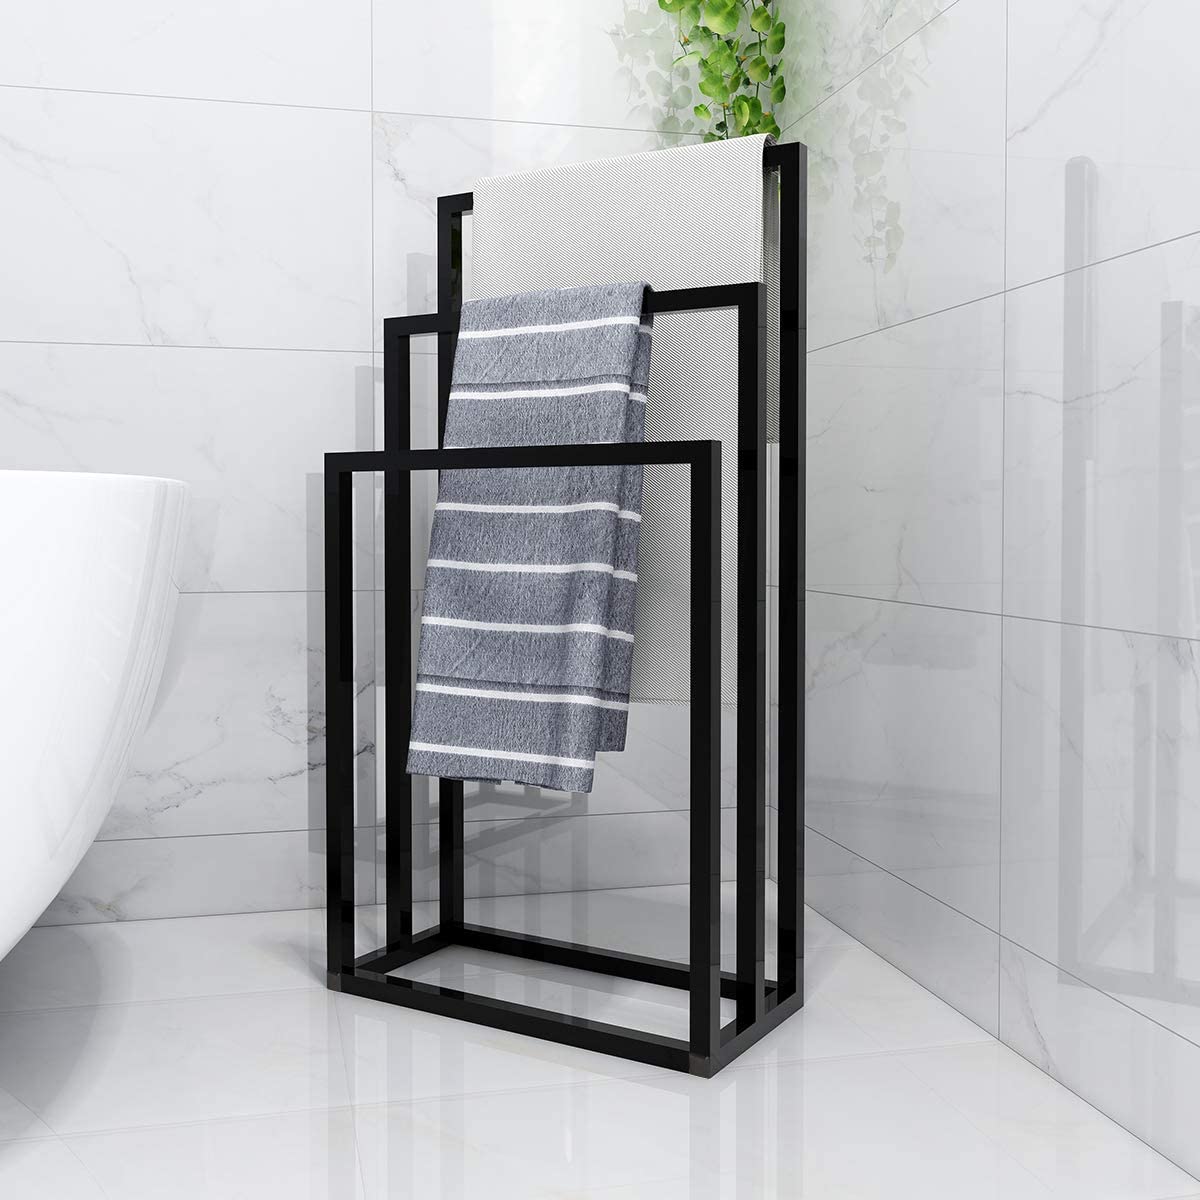 Colgador toallas minimalista MT163 mueble fabricado por Mingenio.cl